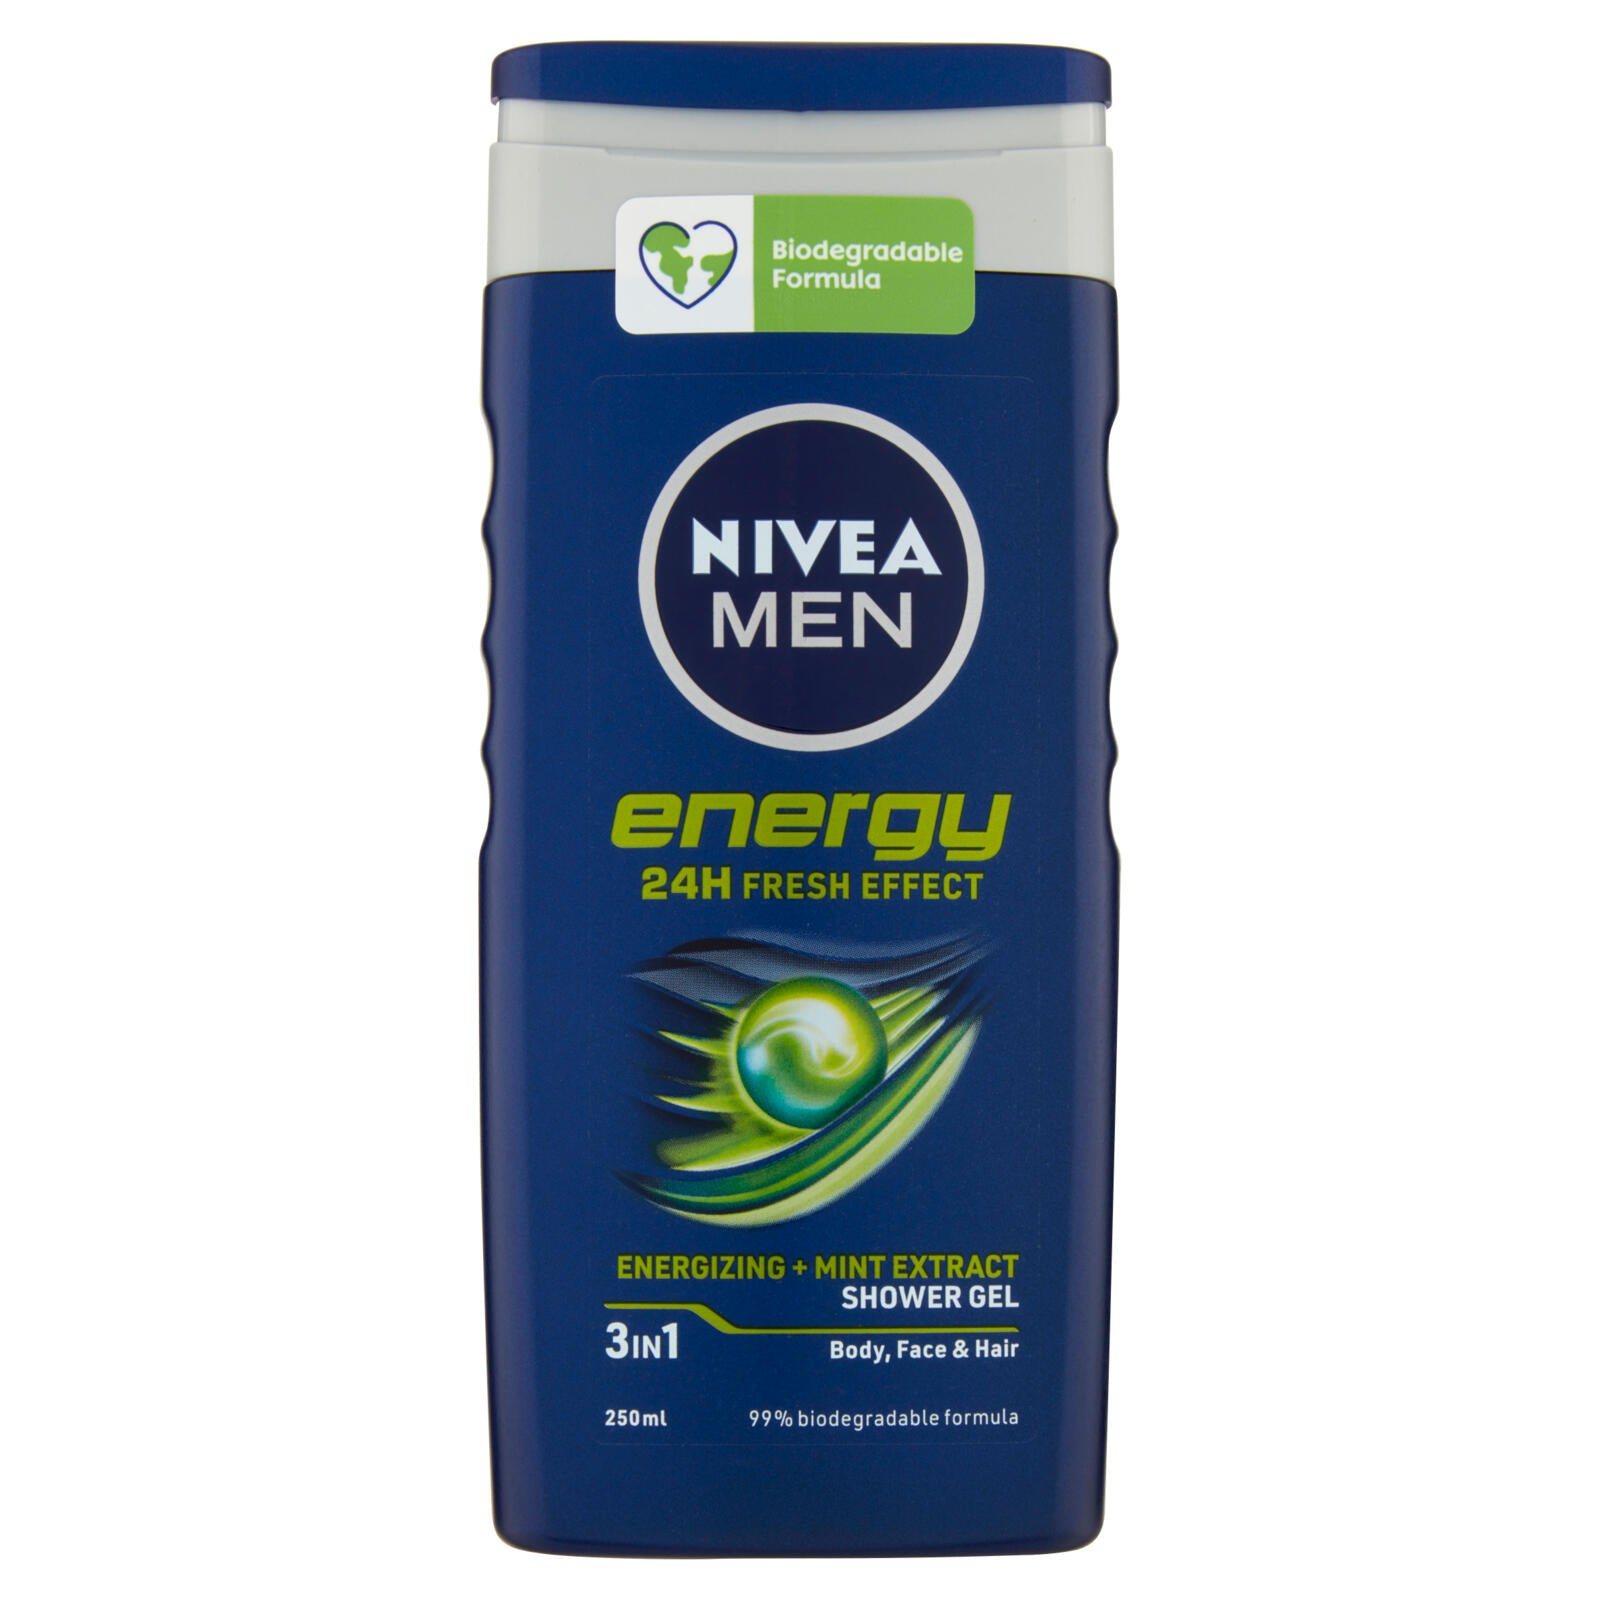 Nivea Men energy 24H Fresh Effect Shower Gel 250 ml